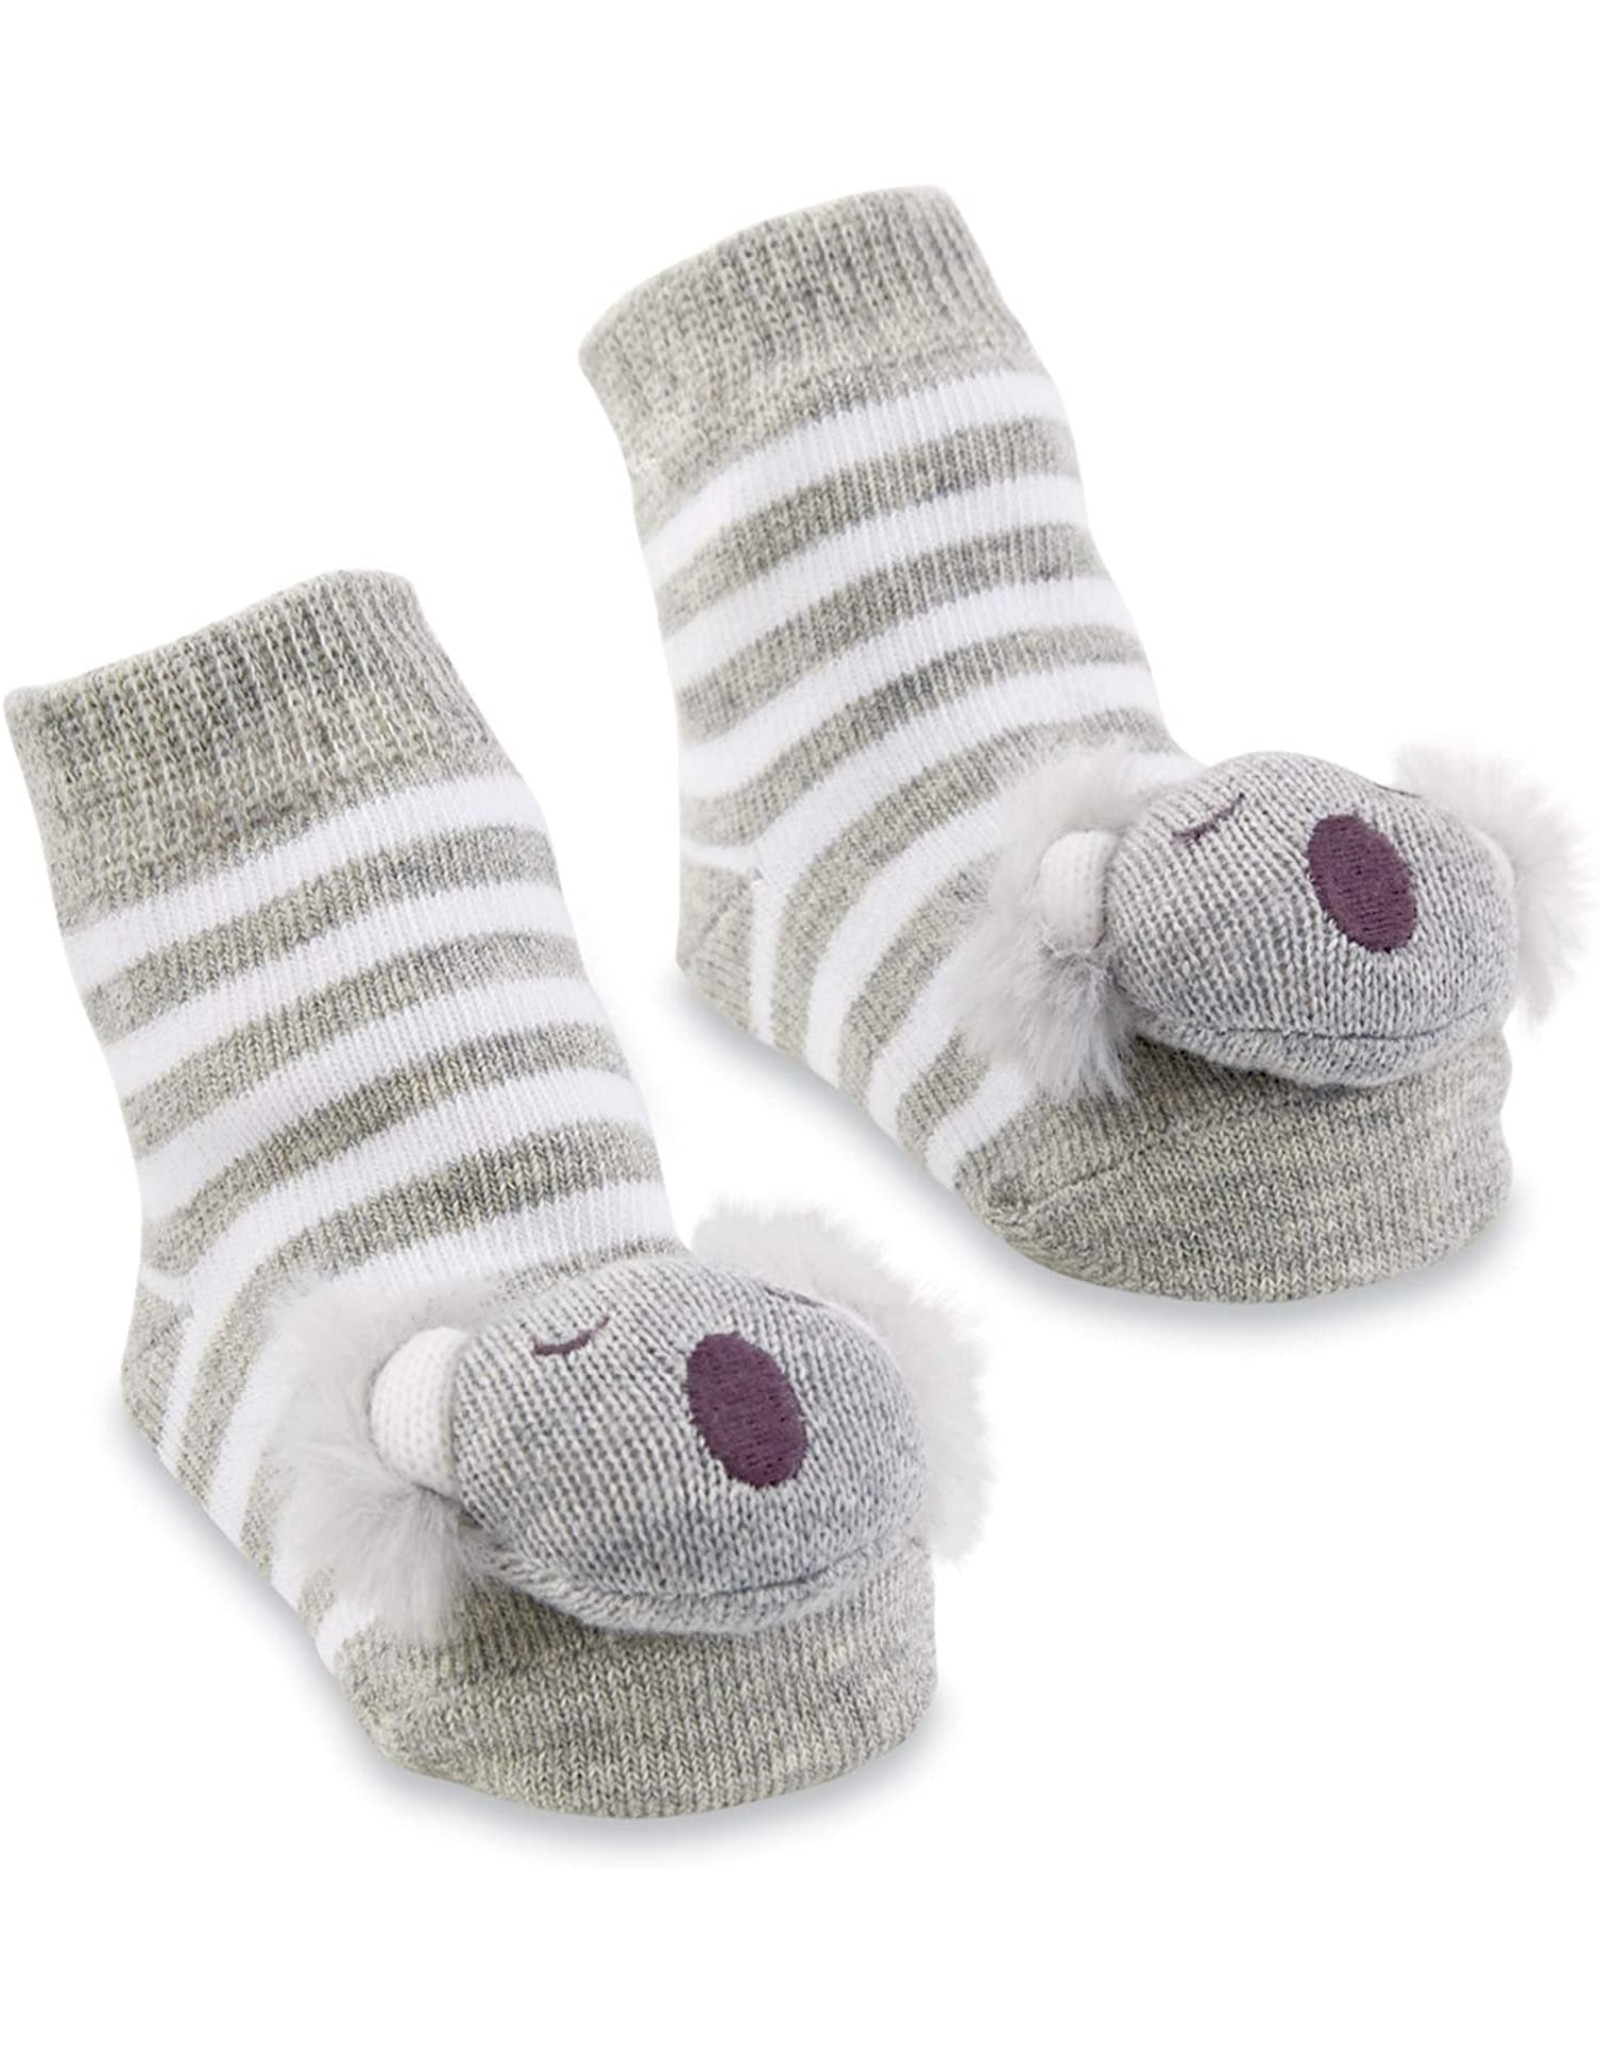 Mud Pie Baby Gifts Koala Rattle Toe Socks